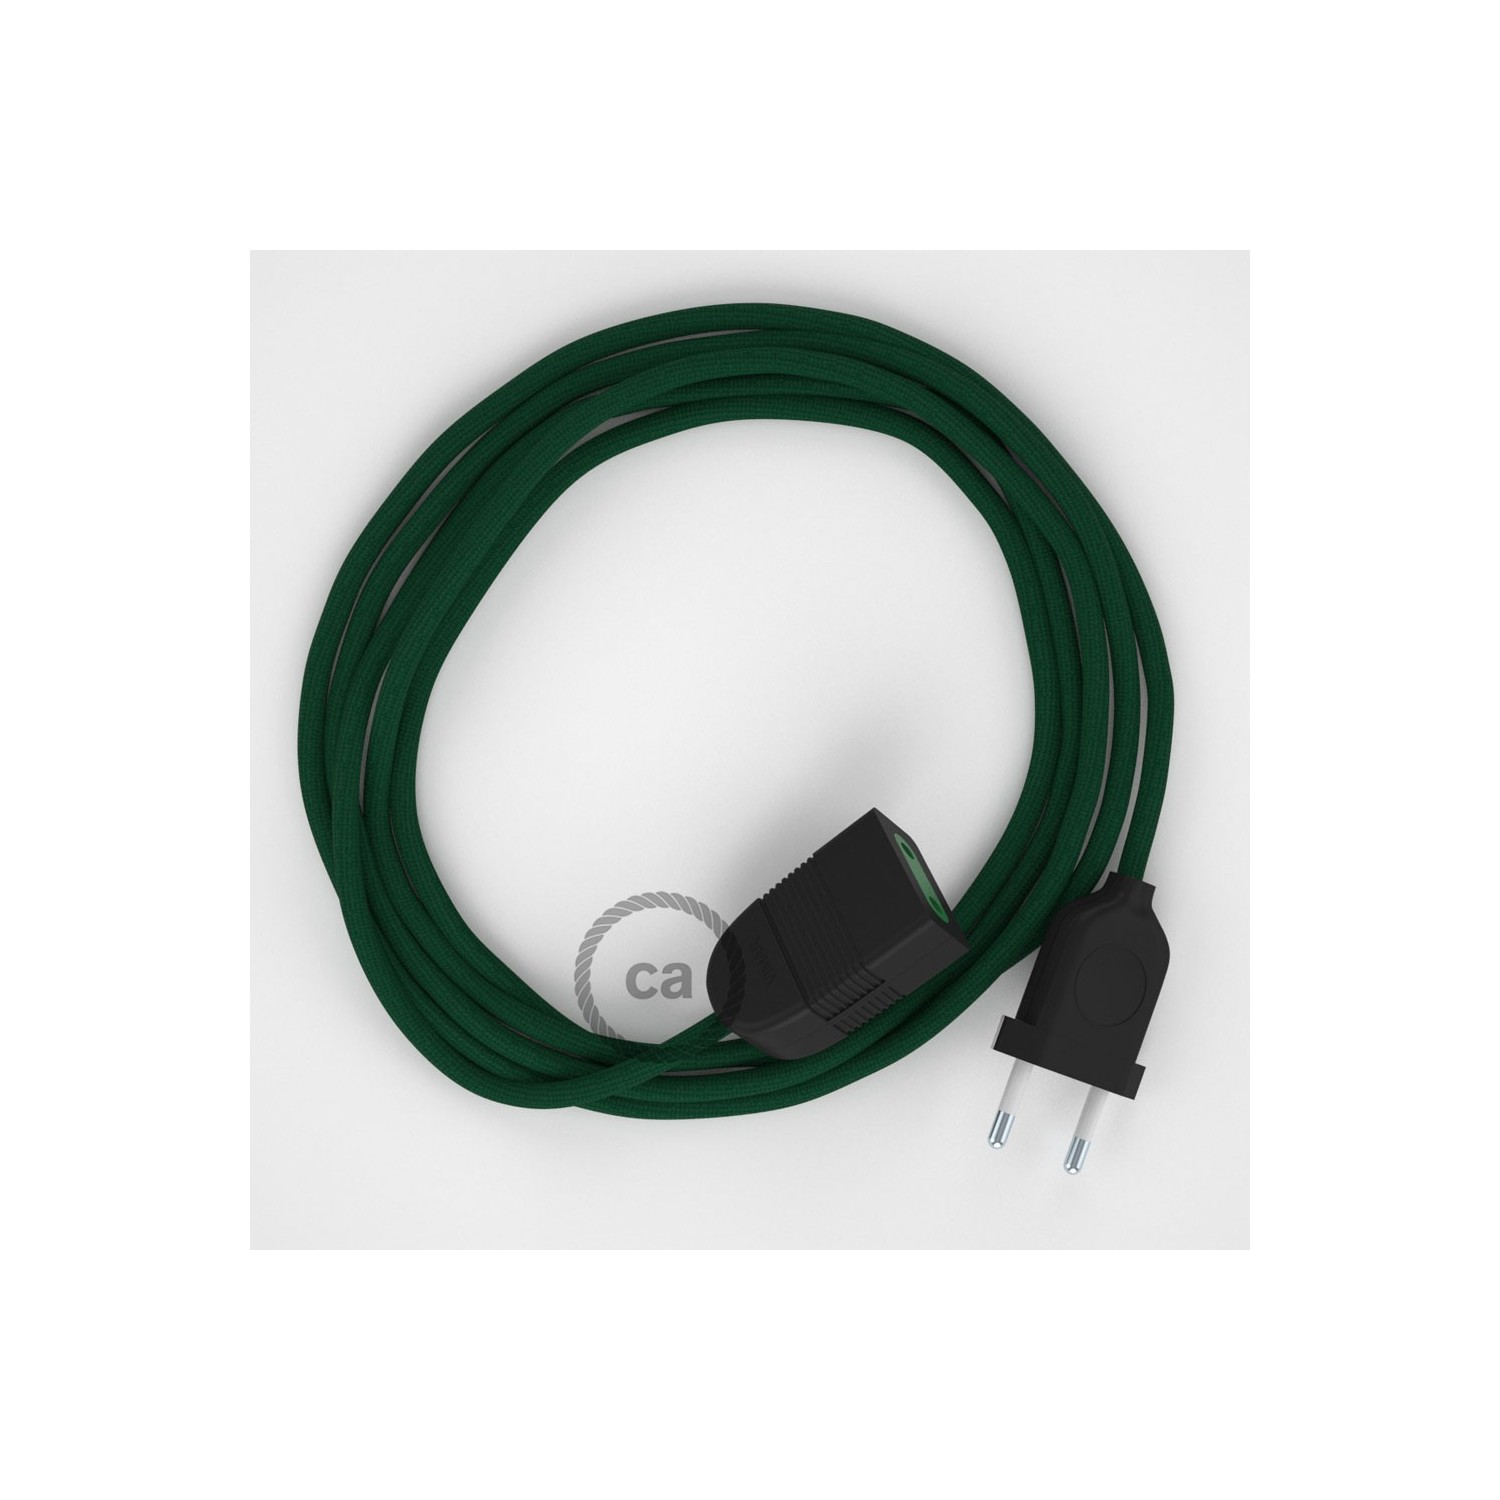 Podaljševalni kabel za napajanje (2P 10A) temno zelen rejon RM21 - Made in Italy